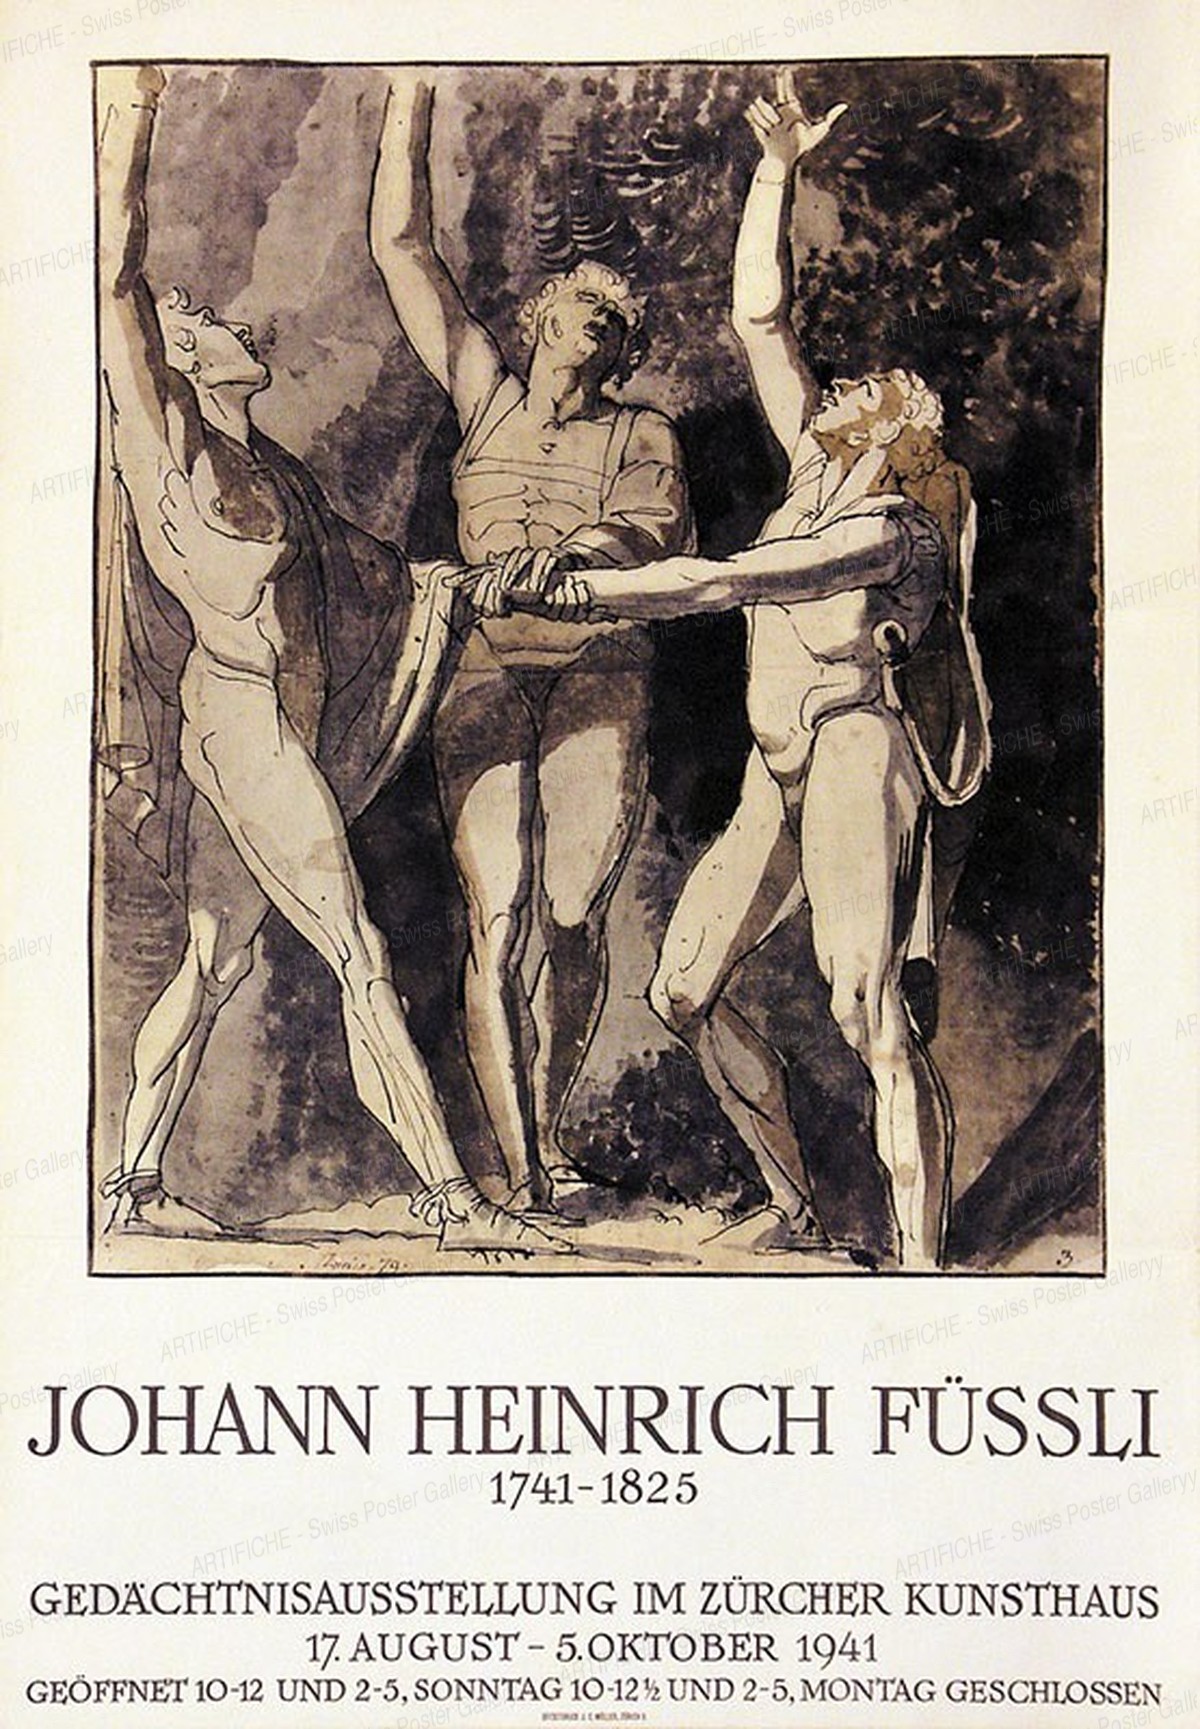 Johann Heinrich Füssli – Gedächtnisausstellung im Zürcher Kunsthaus, Artist unknown